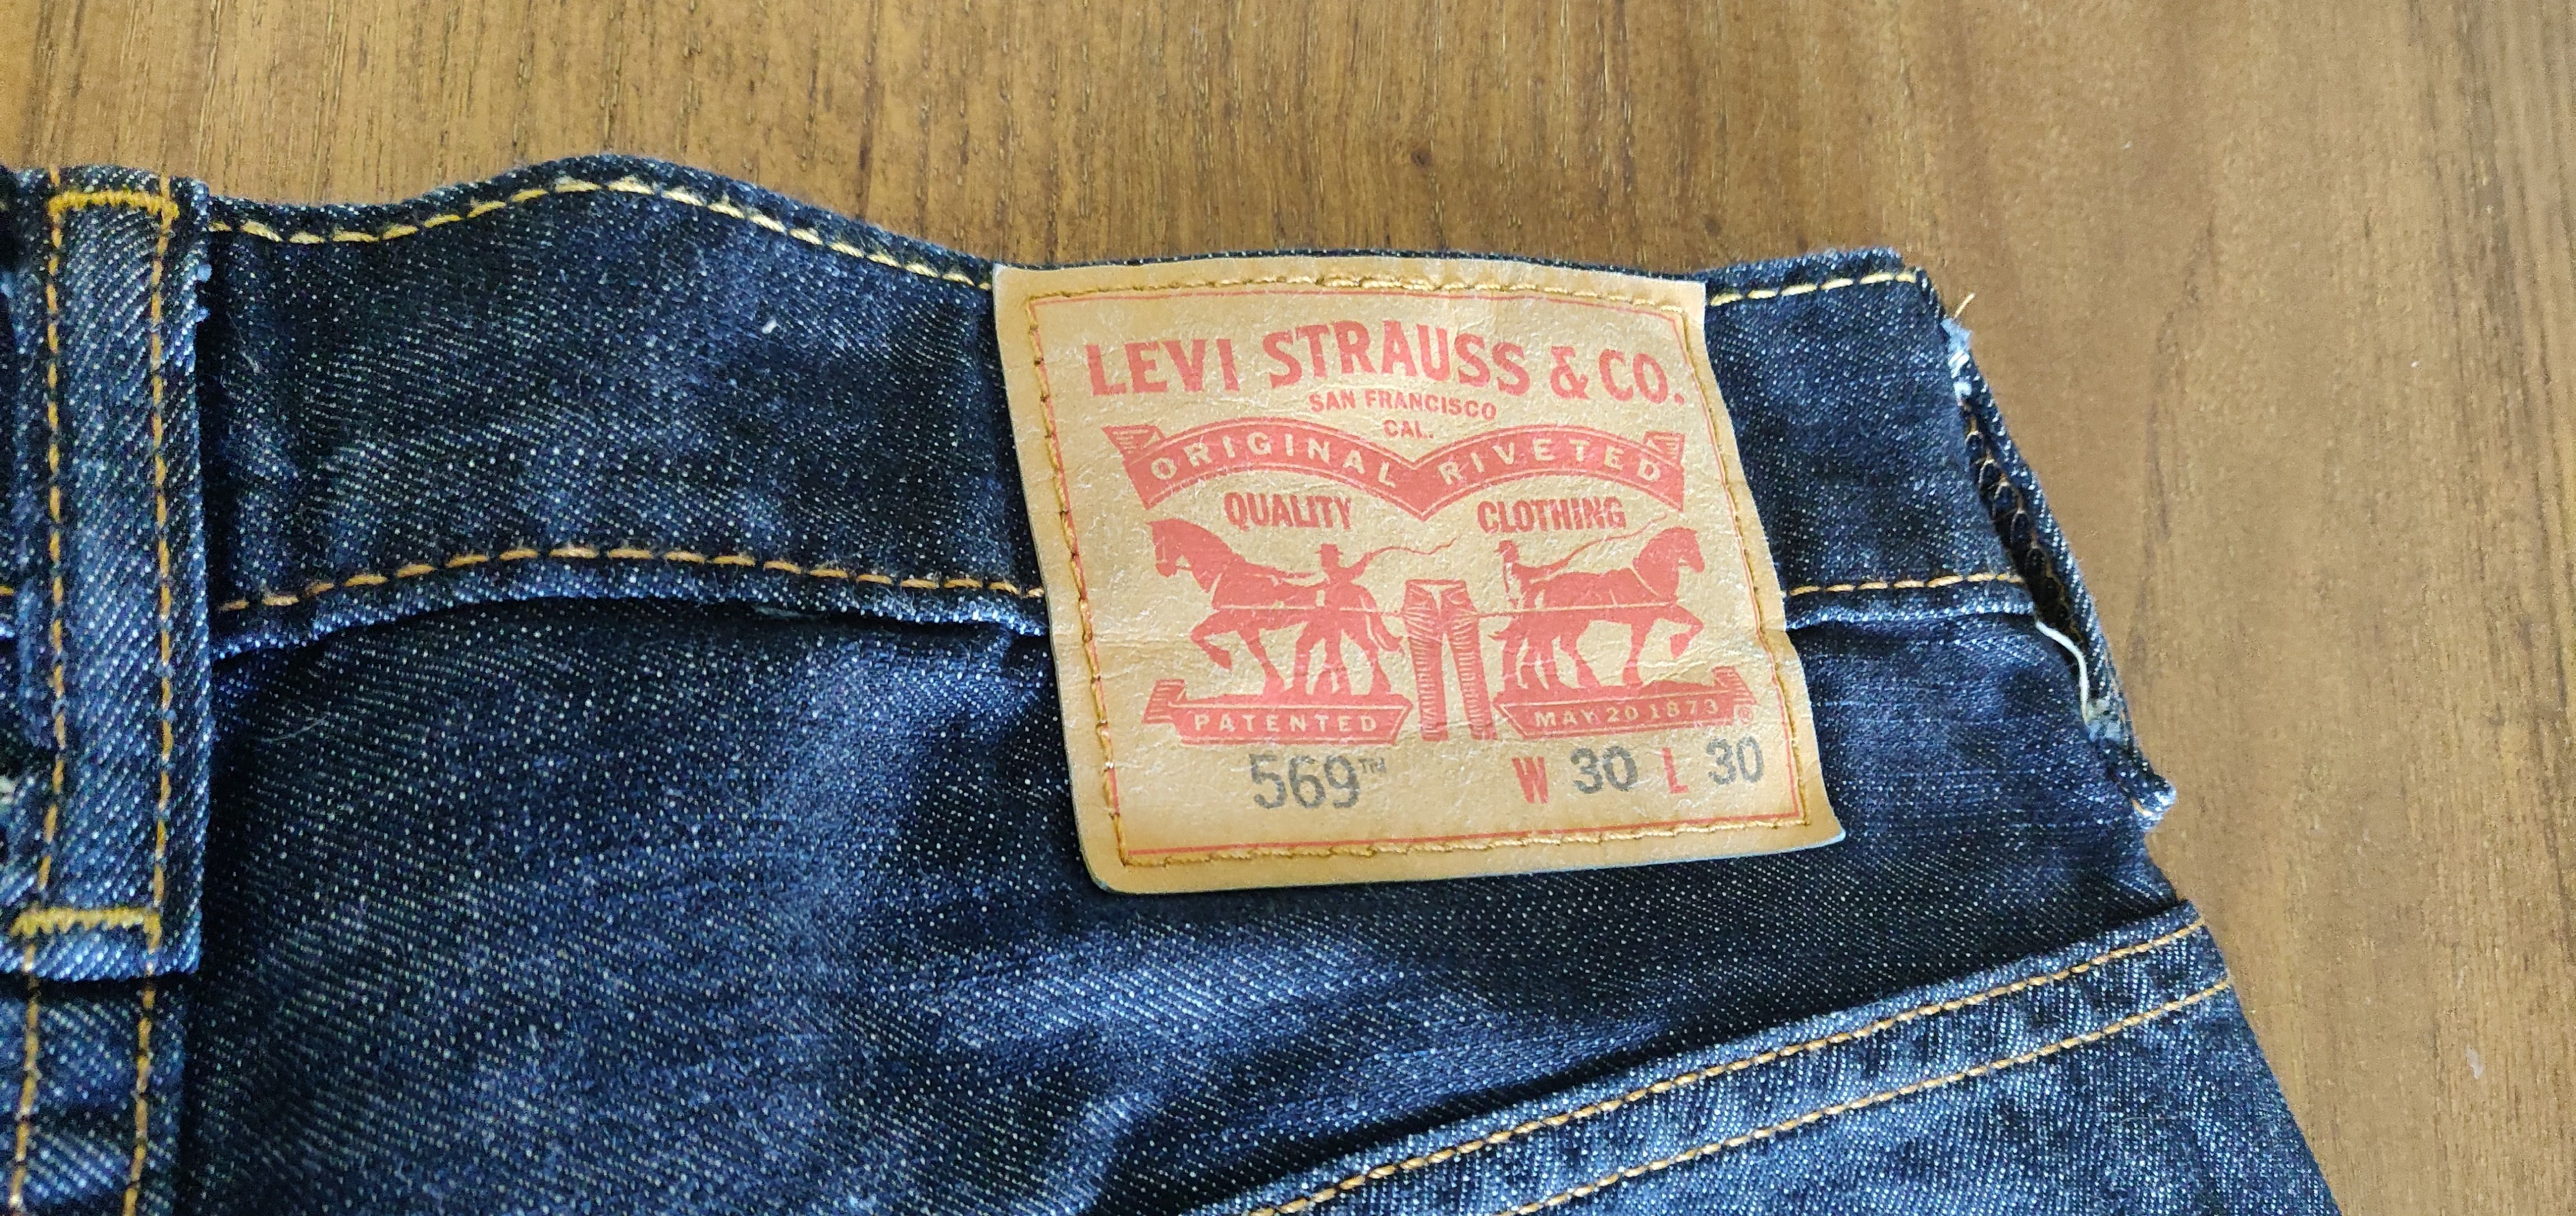 Levi's 569 W30 L30